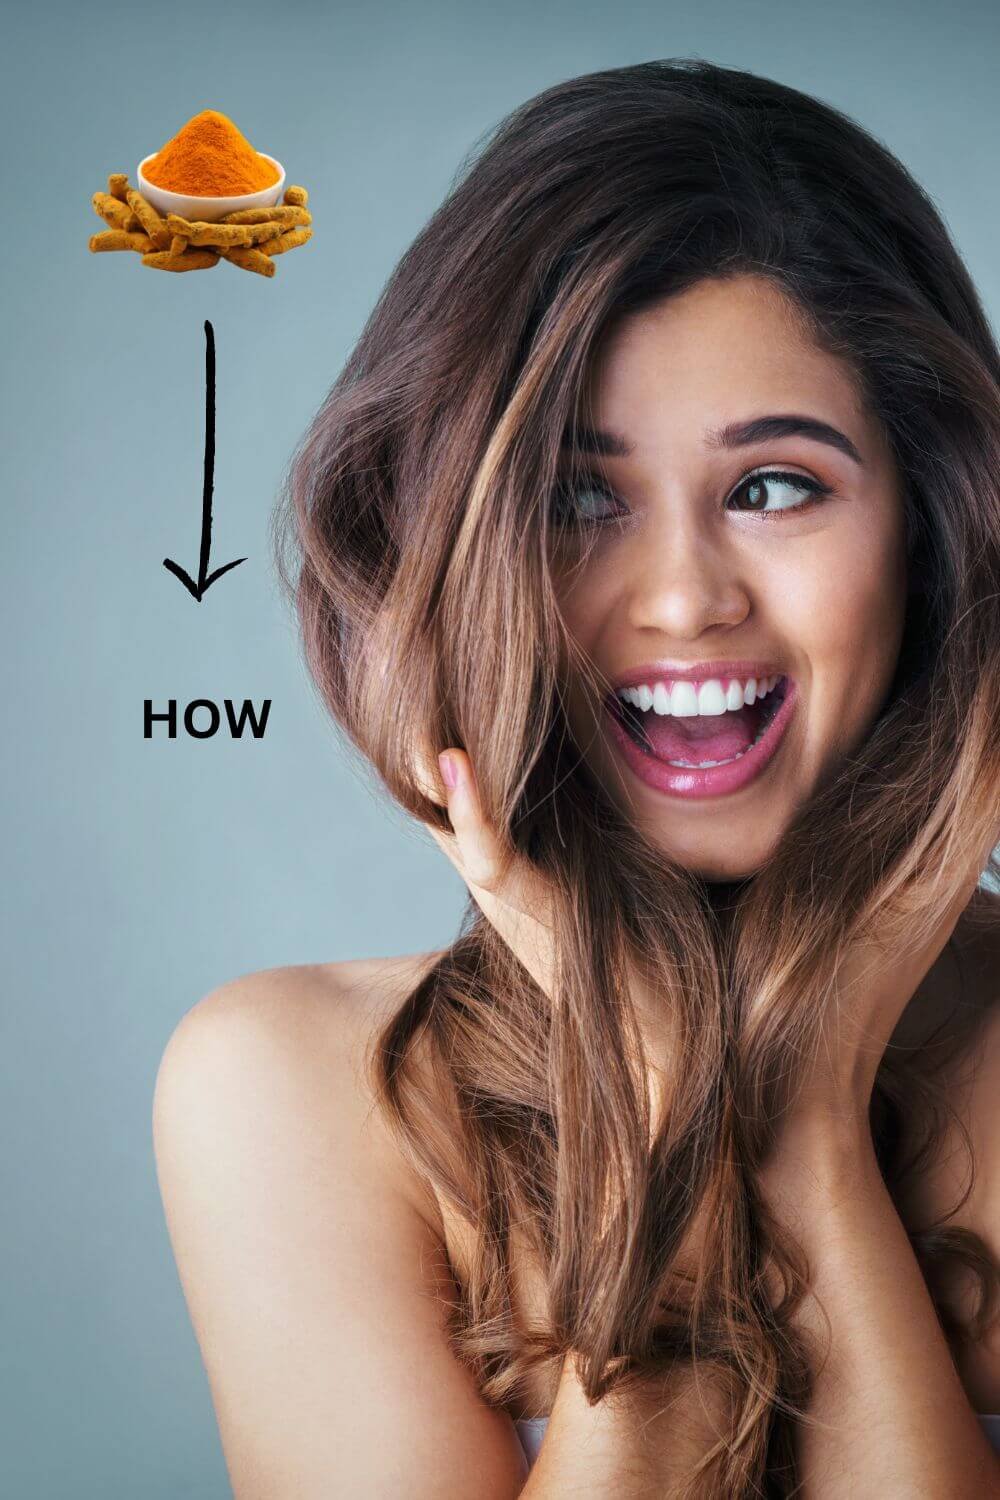 How does turmeric help hair